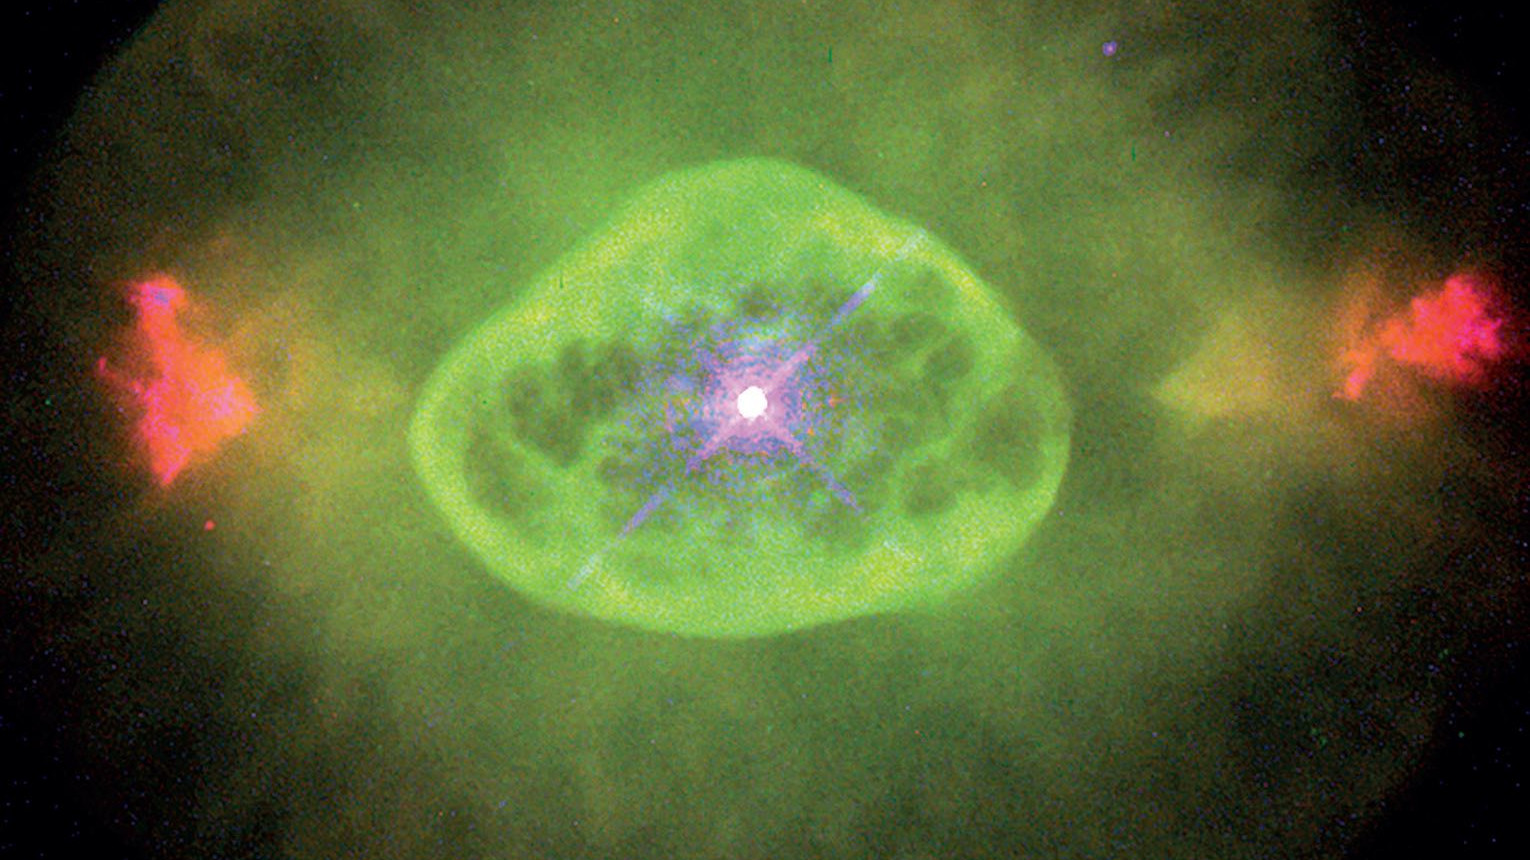 La nébuleuse planétaire clignotante NGC 6826, vue par Hubble. B. Balick (University of Washington), J. Alexander (University of Washington), A. Hajian (U.S. Naval Observatory), Y. Terzian (Cornell University). M. Perinotto (Université de Florence), P. Patriarchi (Observatoire d’Arcetri) et NASA/ESA.